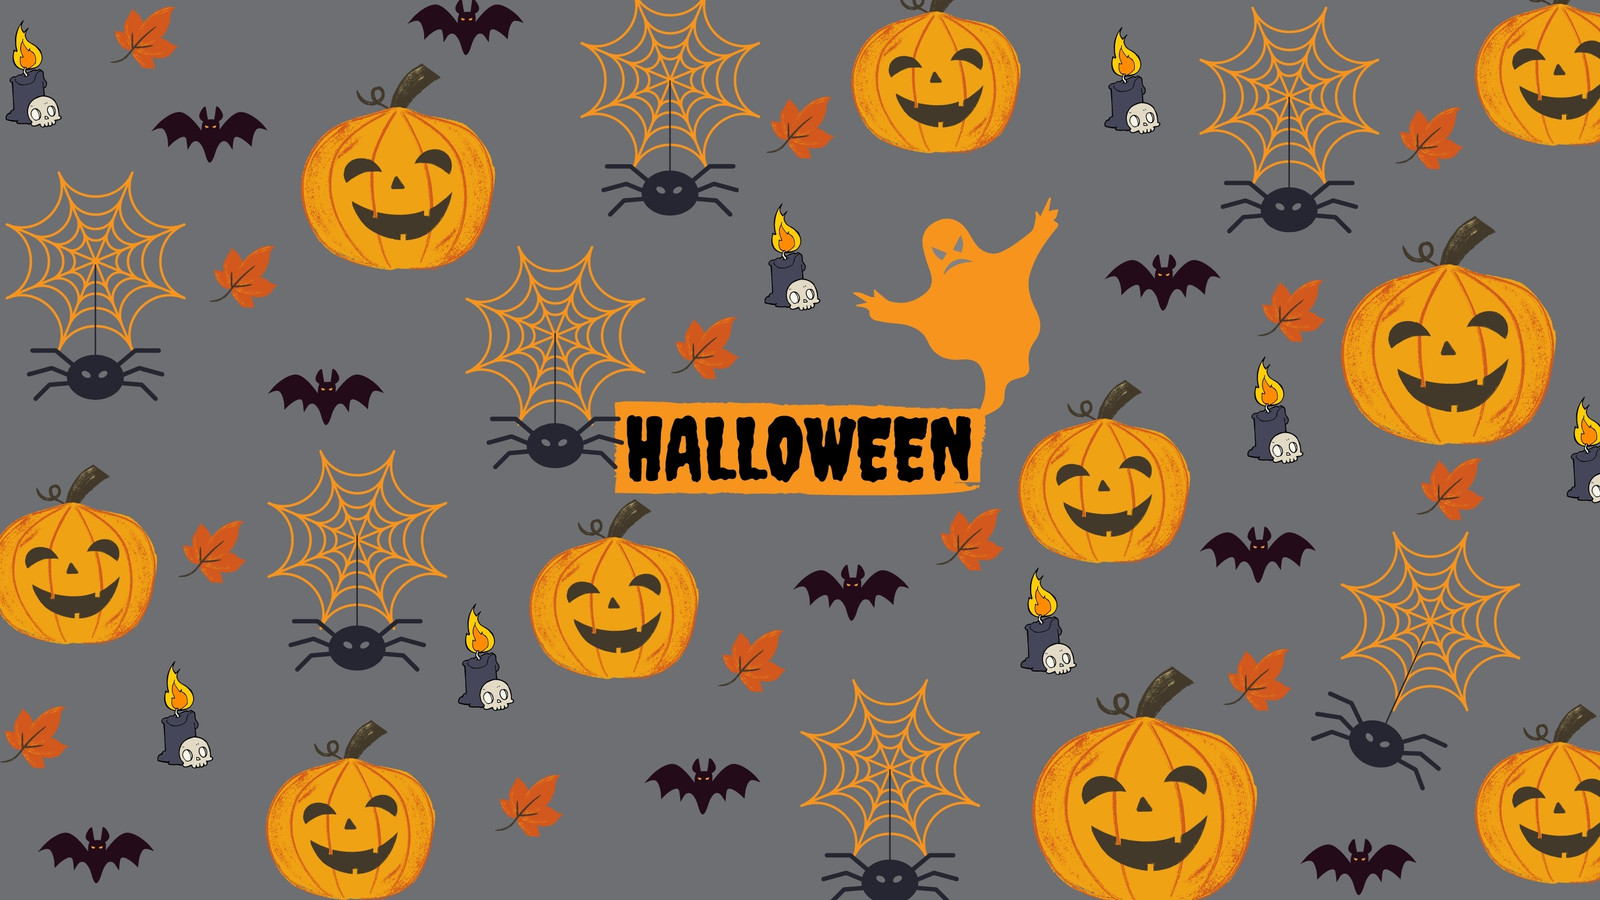 Các mẫu bảng điều khiển với chủ đề halloween giúp bạn dễ dàng tạo ra các thiết kế đồ họa độc đáo riêng cho mình. Tìm hiểu thêm về các mẫu tùy chỉnh và tận dụng chúng để sáng tạo.